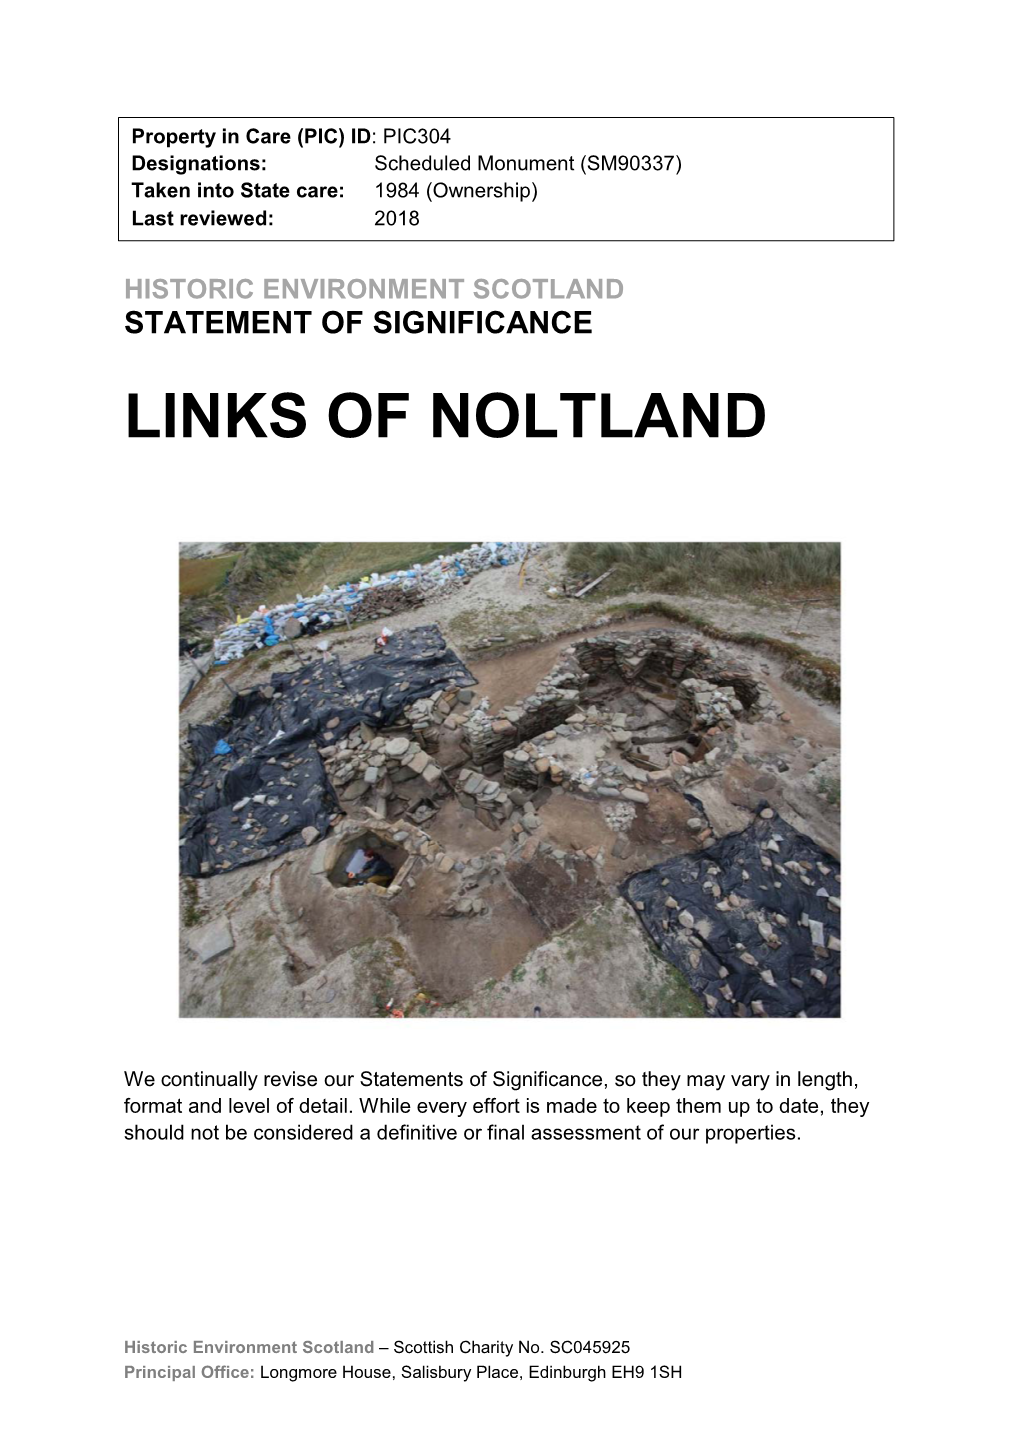 Links of Noltland